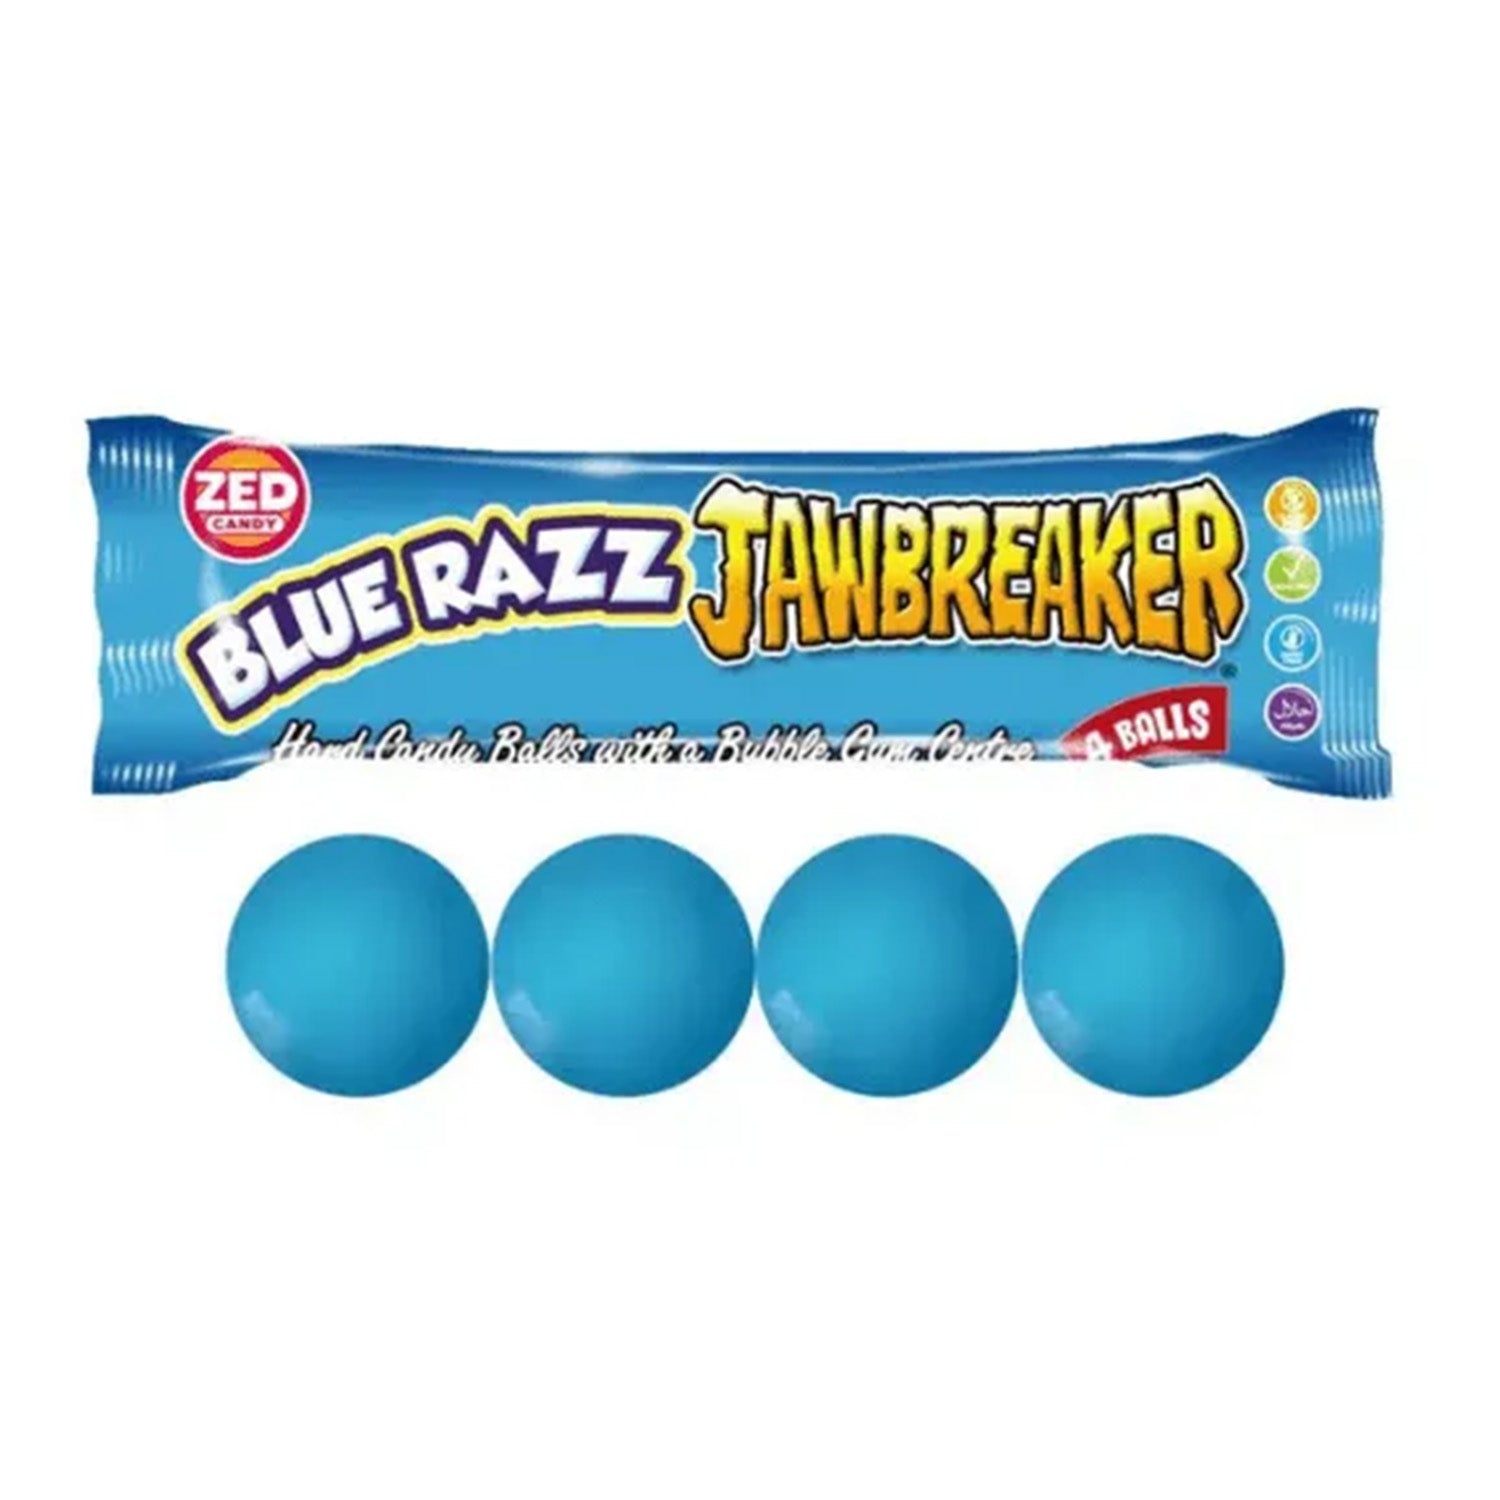 Jawbreaker Blue Razz (33 gram) - van Jawbreaker - Nu voor maar €0.49 bij Mijn Snoepgoed